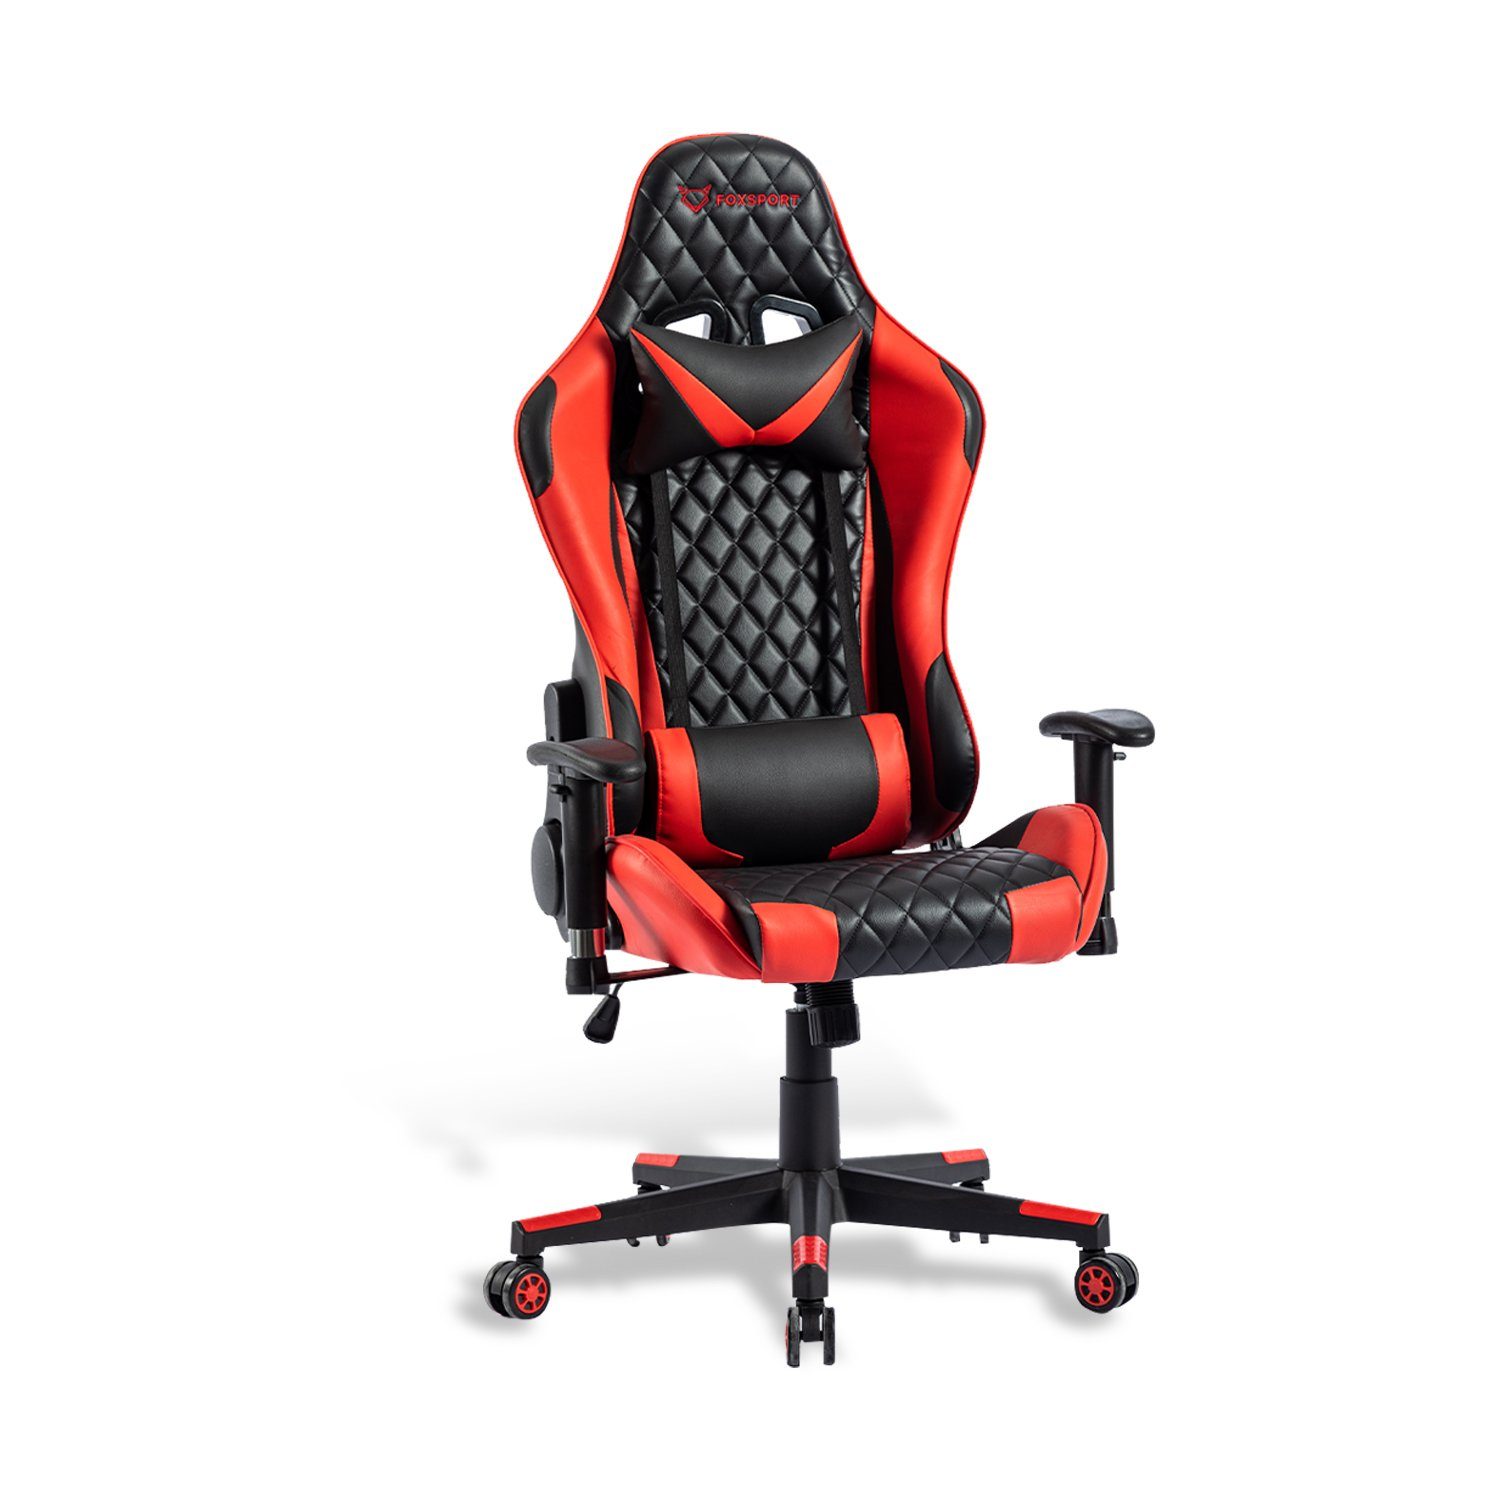 IKIDO Gaming-Stuhl Ergonomischer Spielestuhl (Professioneller Gamingstuhl), Verstellbare Rückenlehne, Ergonomischer Rahmen, Stoßdämpfendes Kissen rot